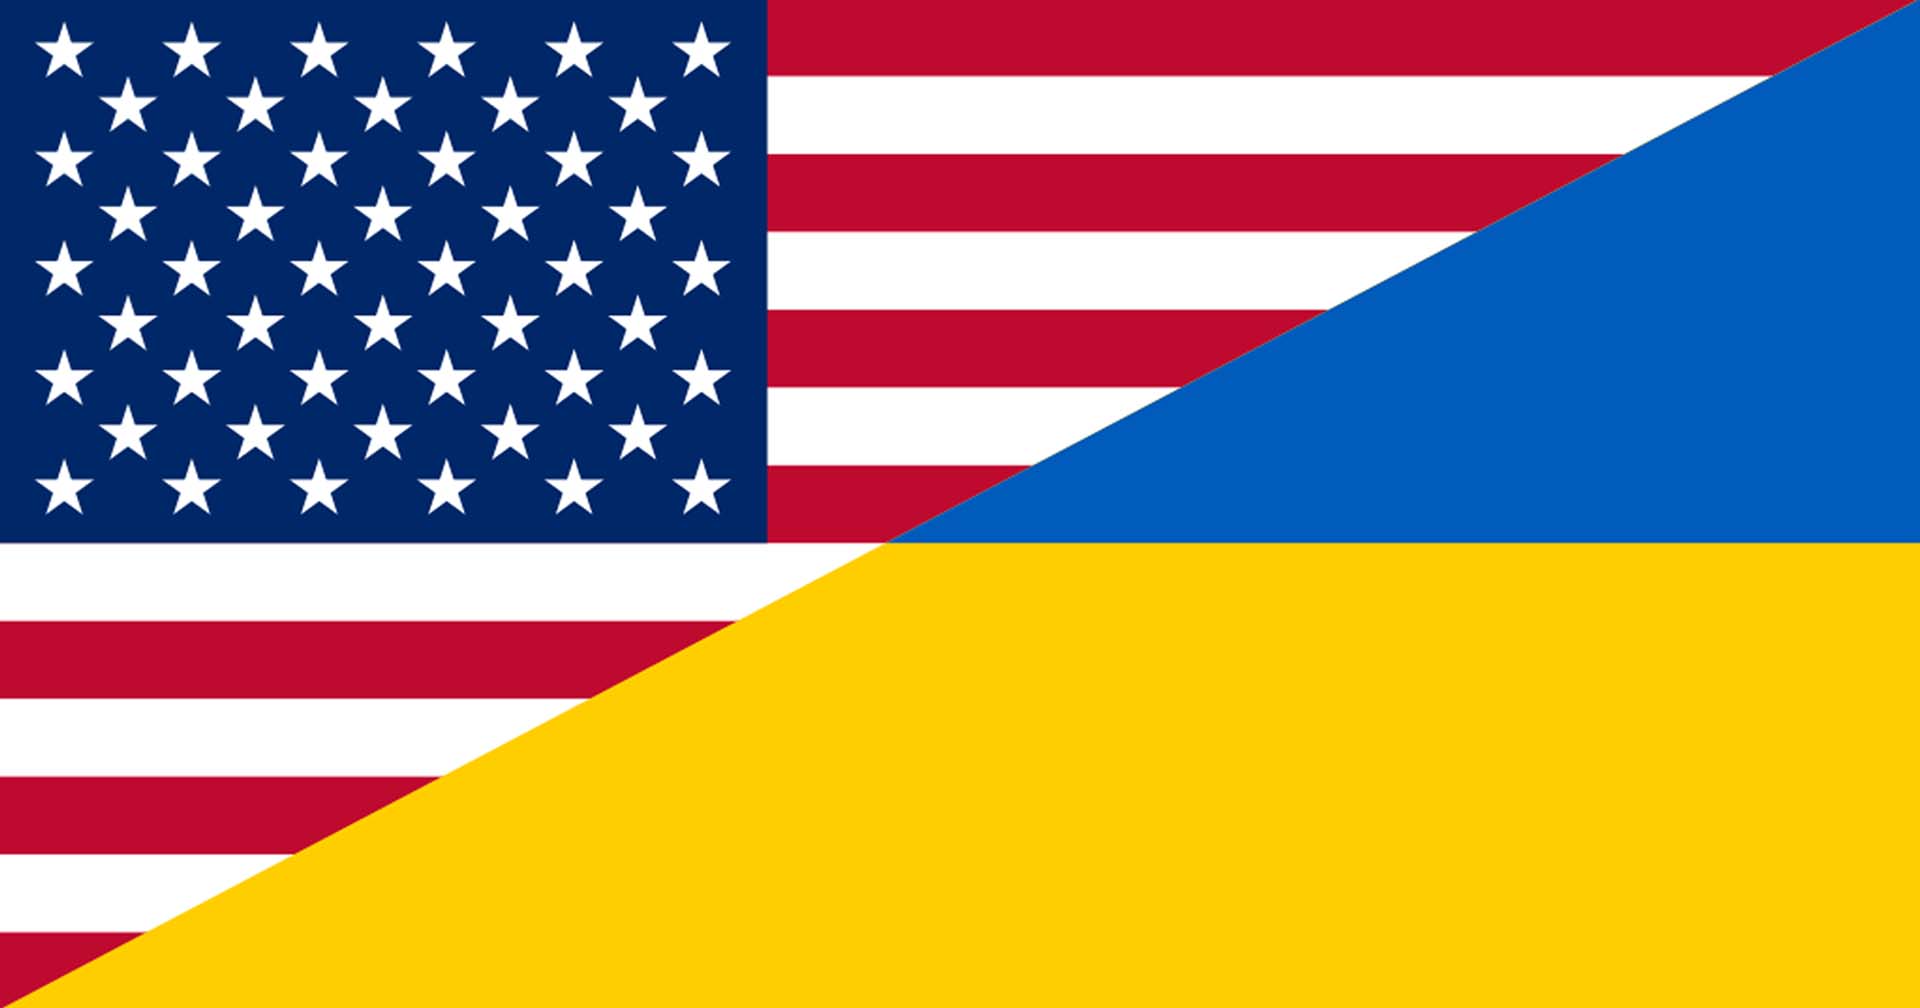 ผู้นำยูเครน-สหรัฐฯ ต่อสายหารือประเด็นความมั่นคง